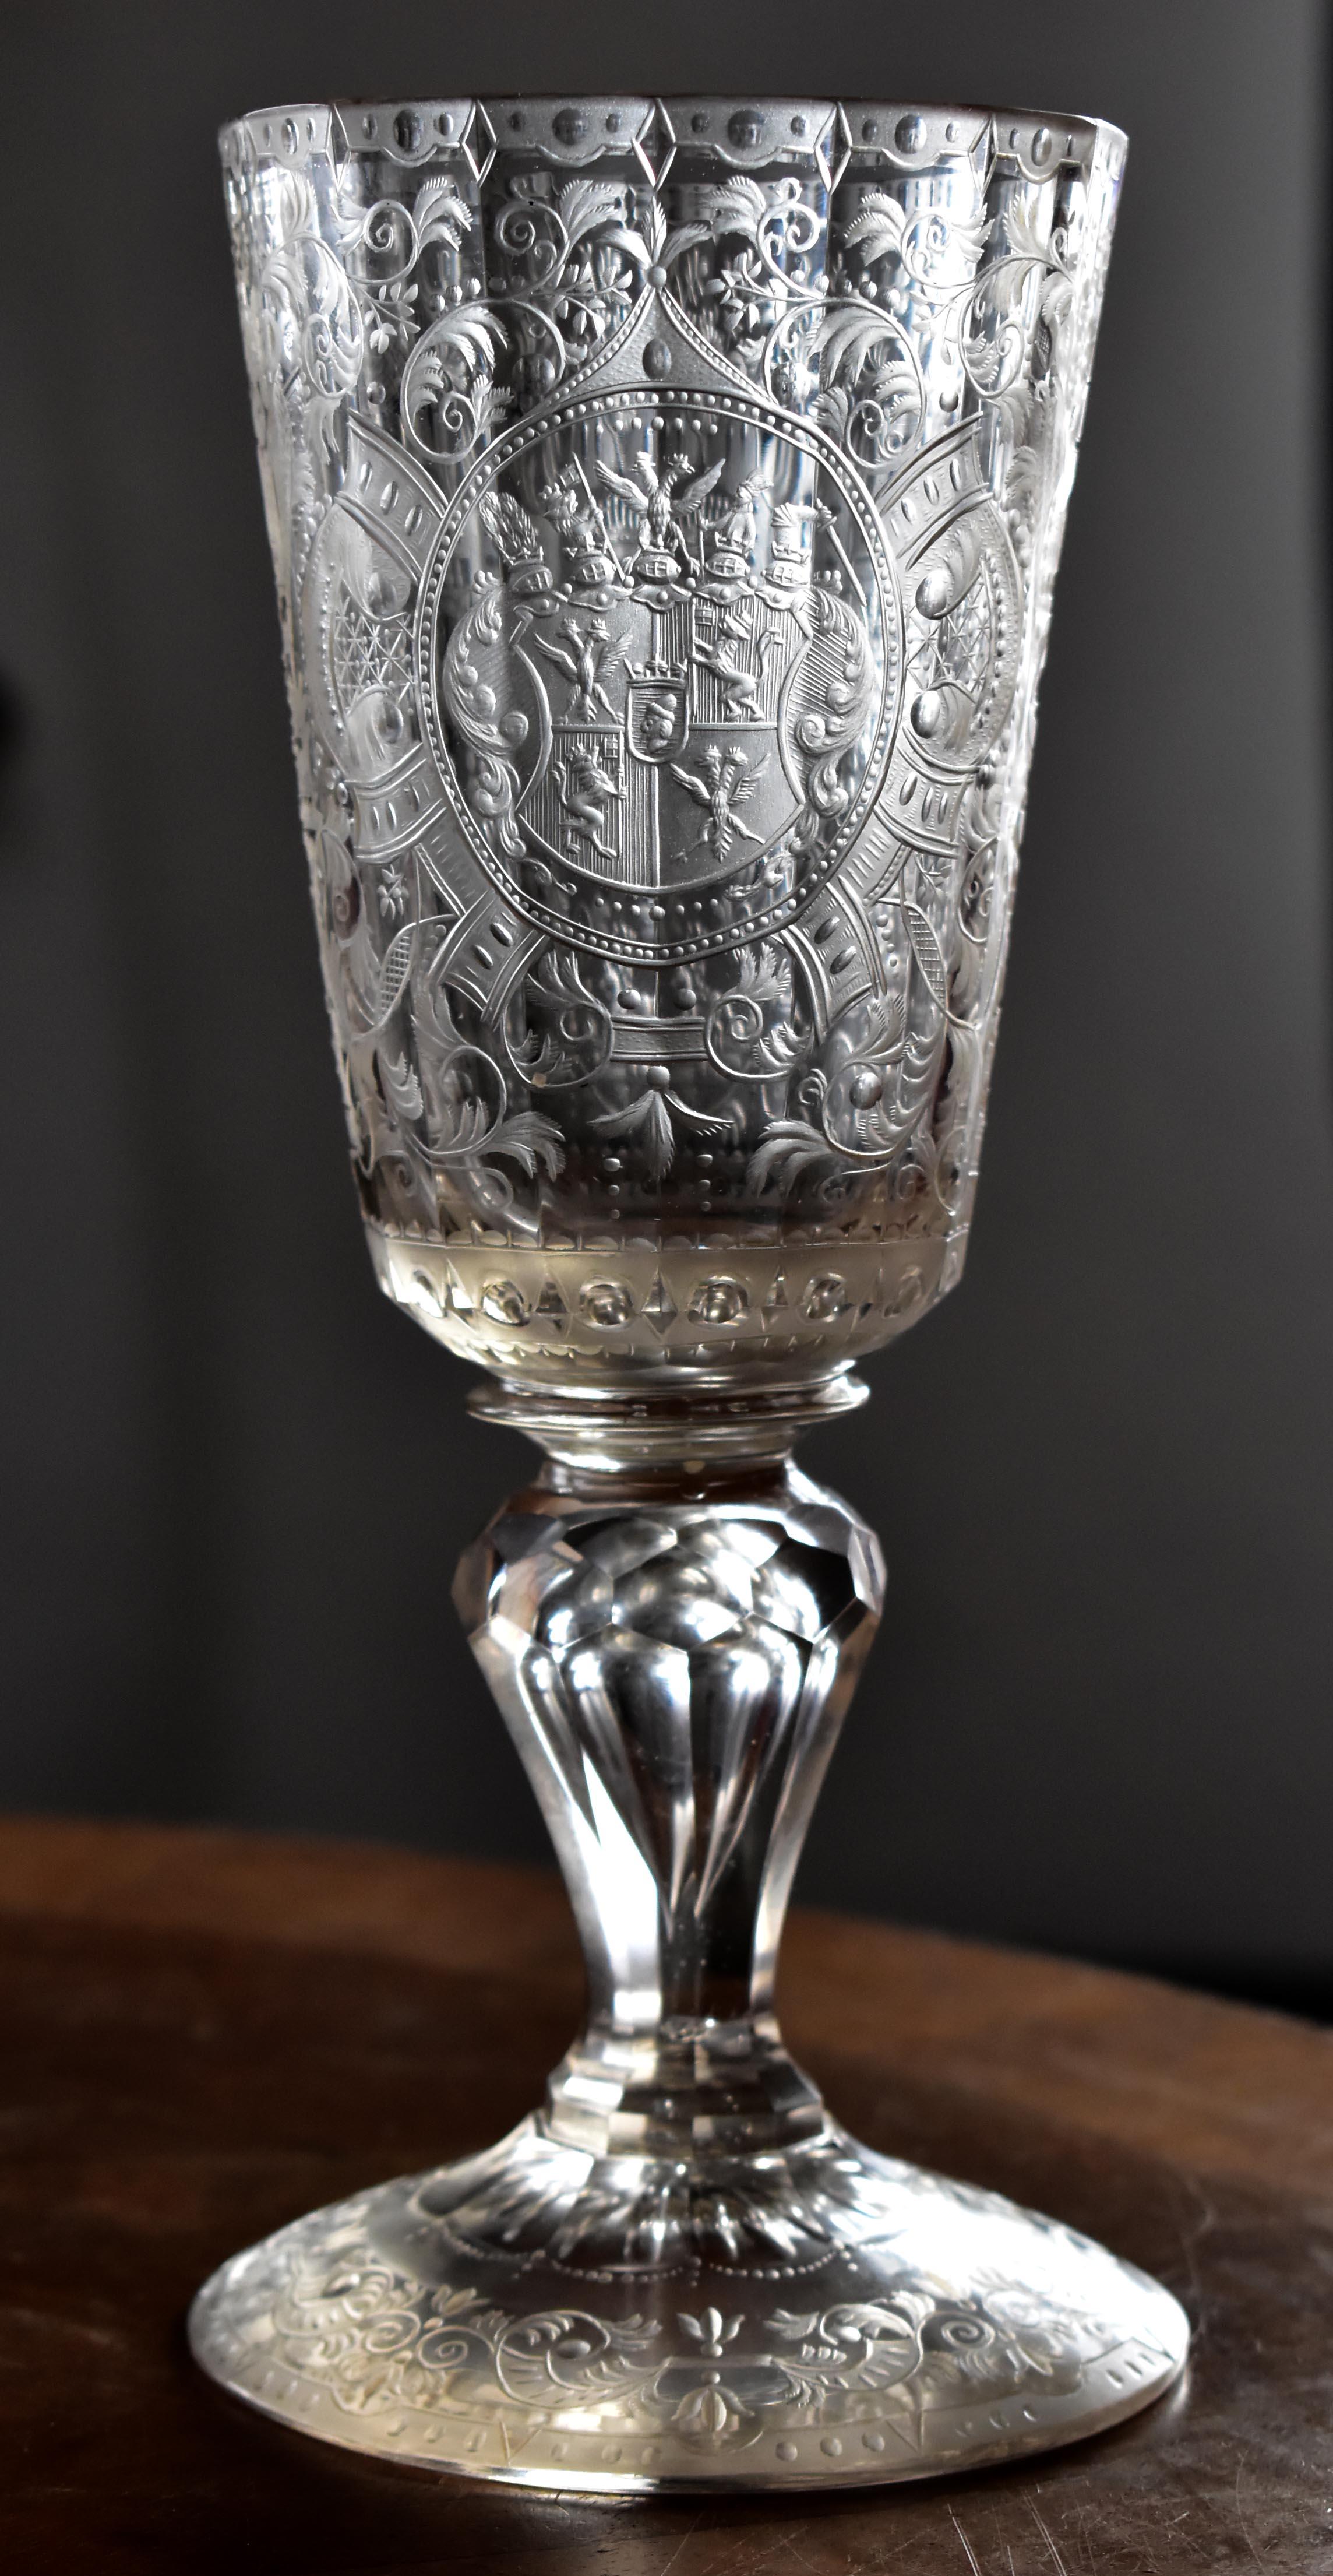 Ein einzigartiger antiker Becher aus geschliffenem Glas mit einer Gravur des Wappens der berühmten Adelsfamilie von Spork. Die Erwähnung dieser Familie geht bis ins 16. Jahrhundert zurück, ihre gesamte Geschichte lässt sich zurückverfolgen. Dies ist